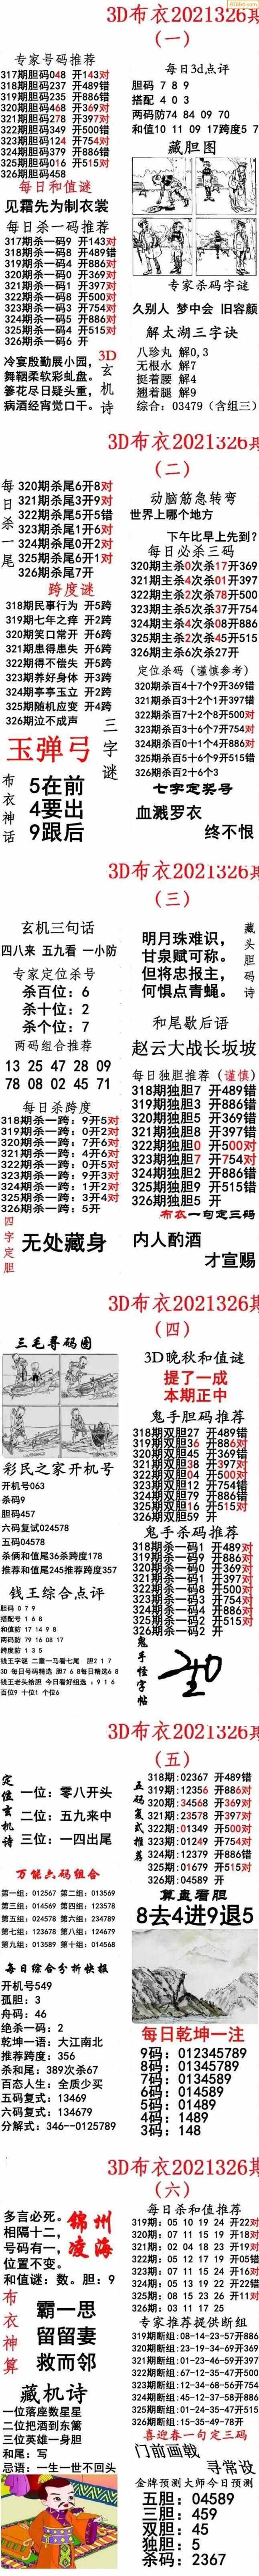 (5)326期图库总集福彩3d字谜图谜总汇